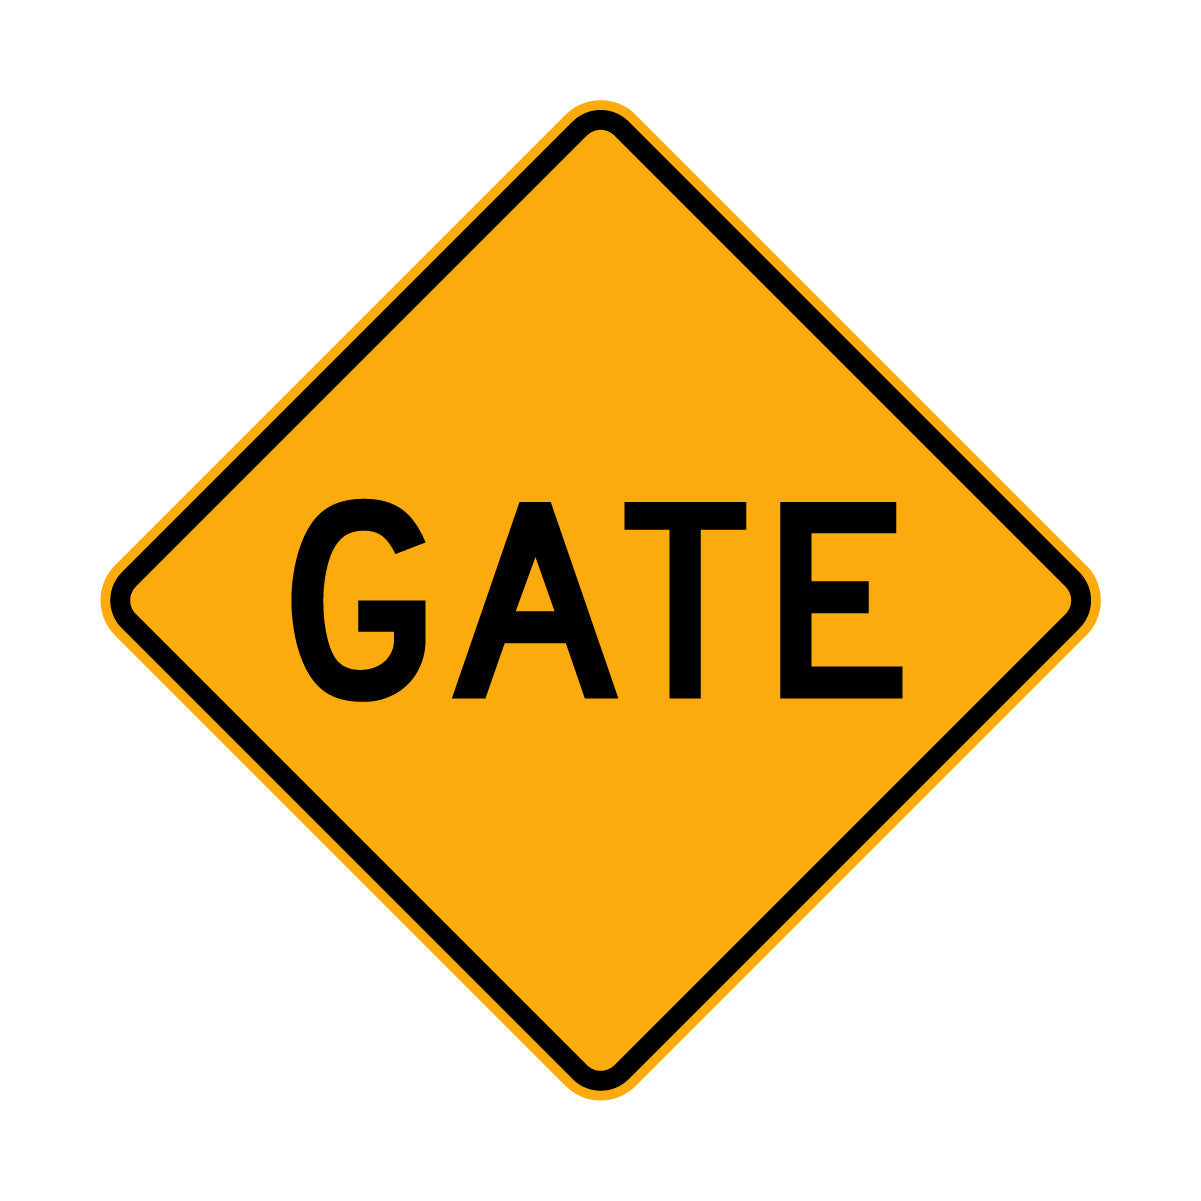 Warning: Gate Sign